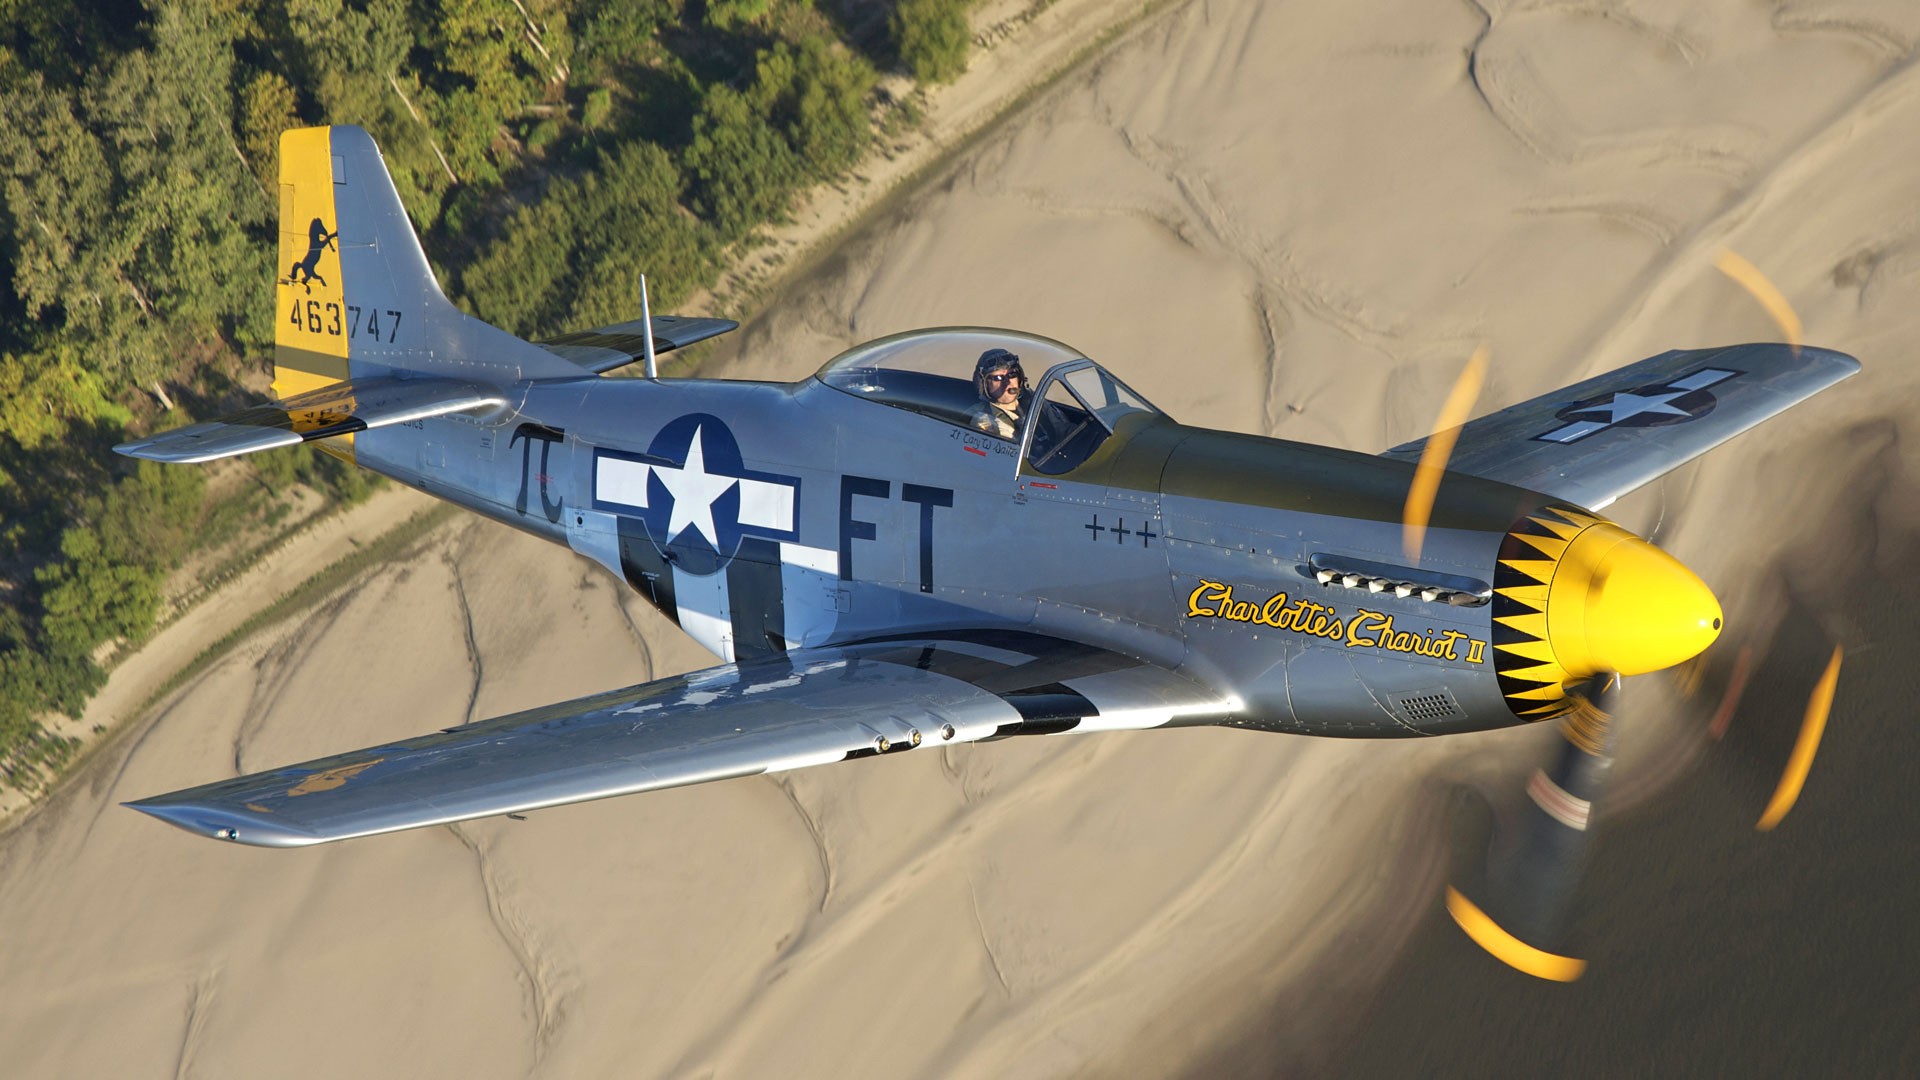 Aircraft Warbird P-51 Mustang wallpaper | 1920x1080 | 217939 ...